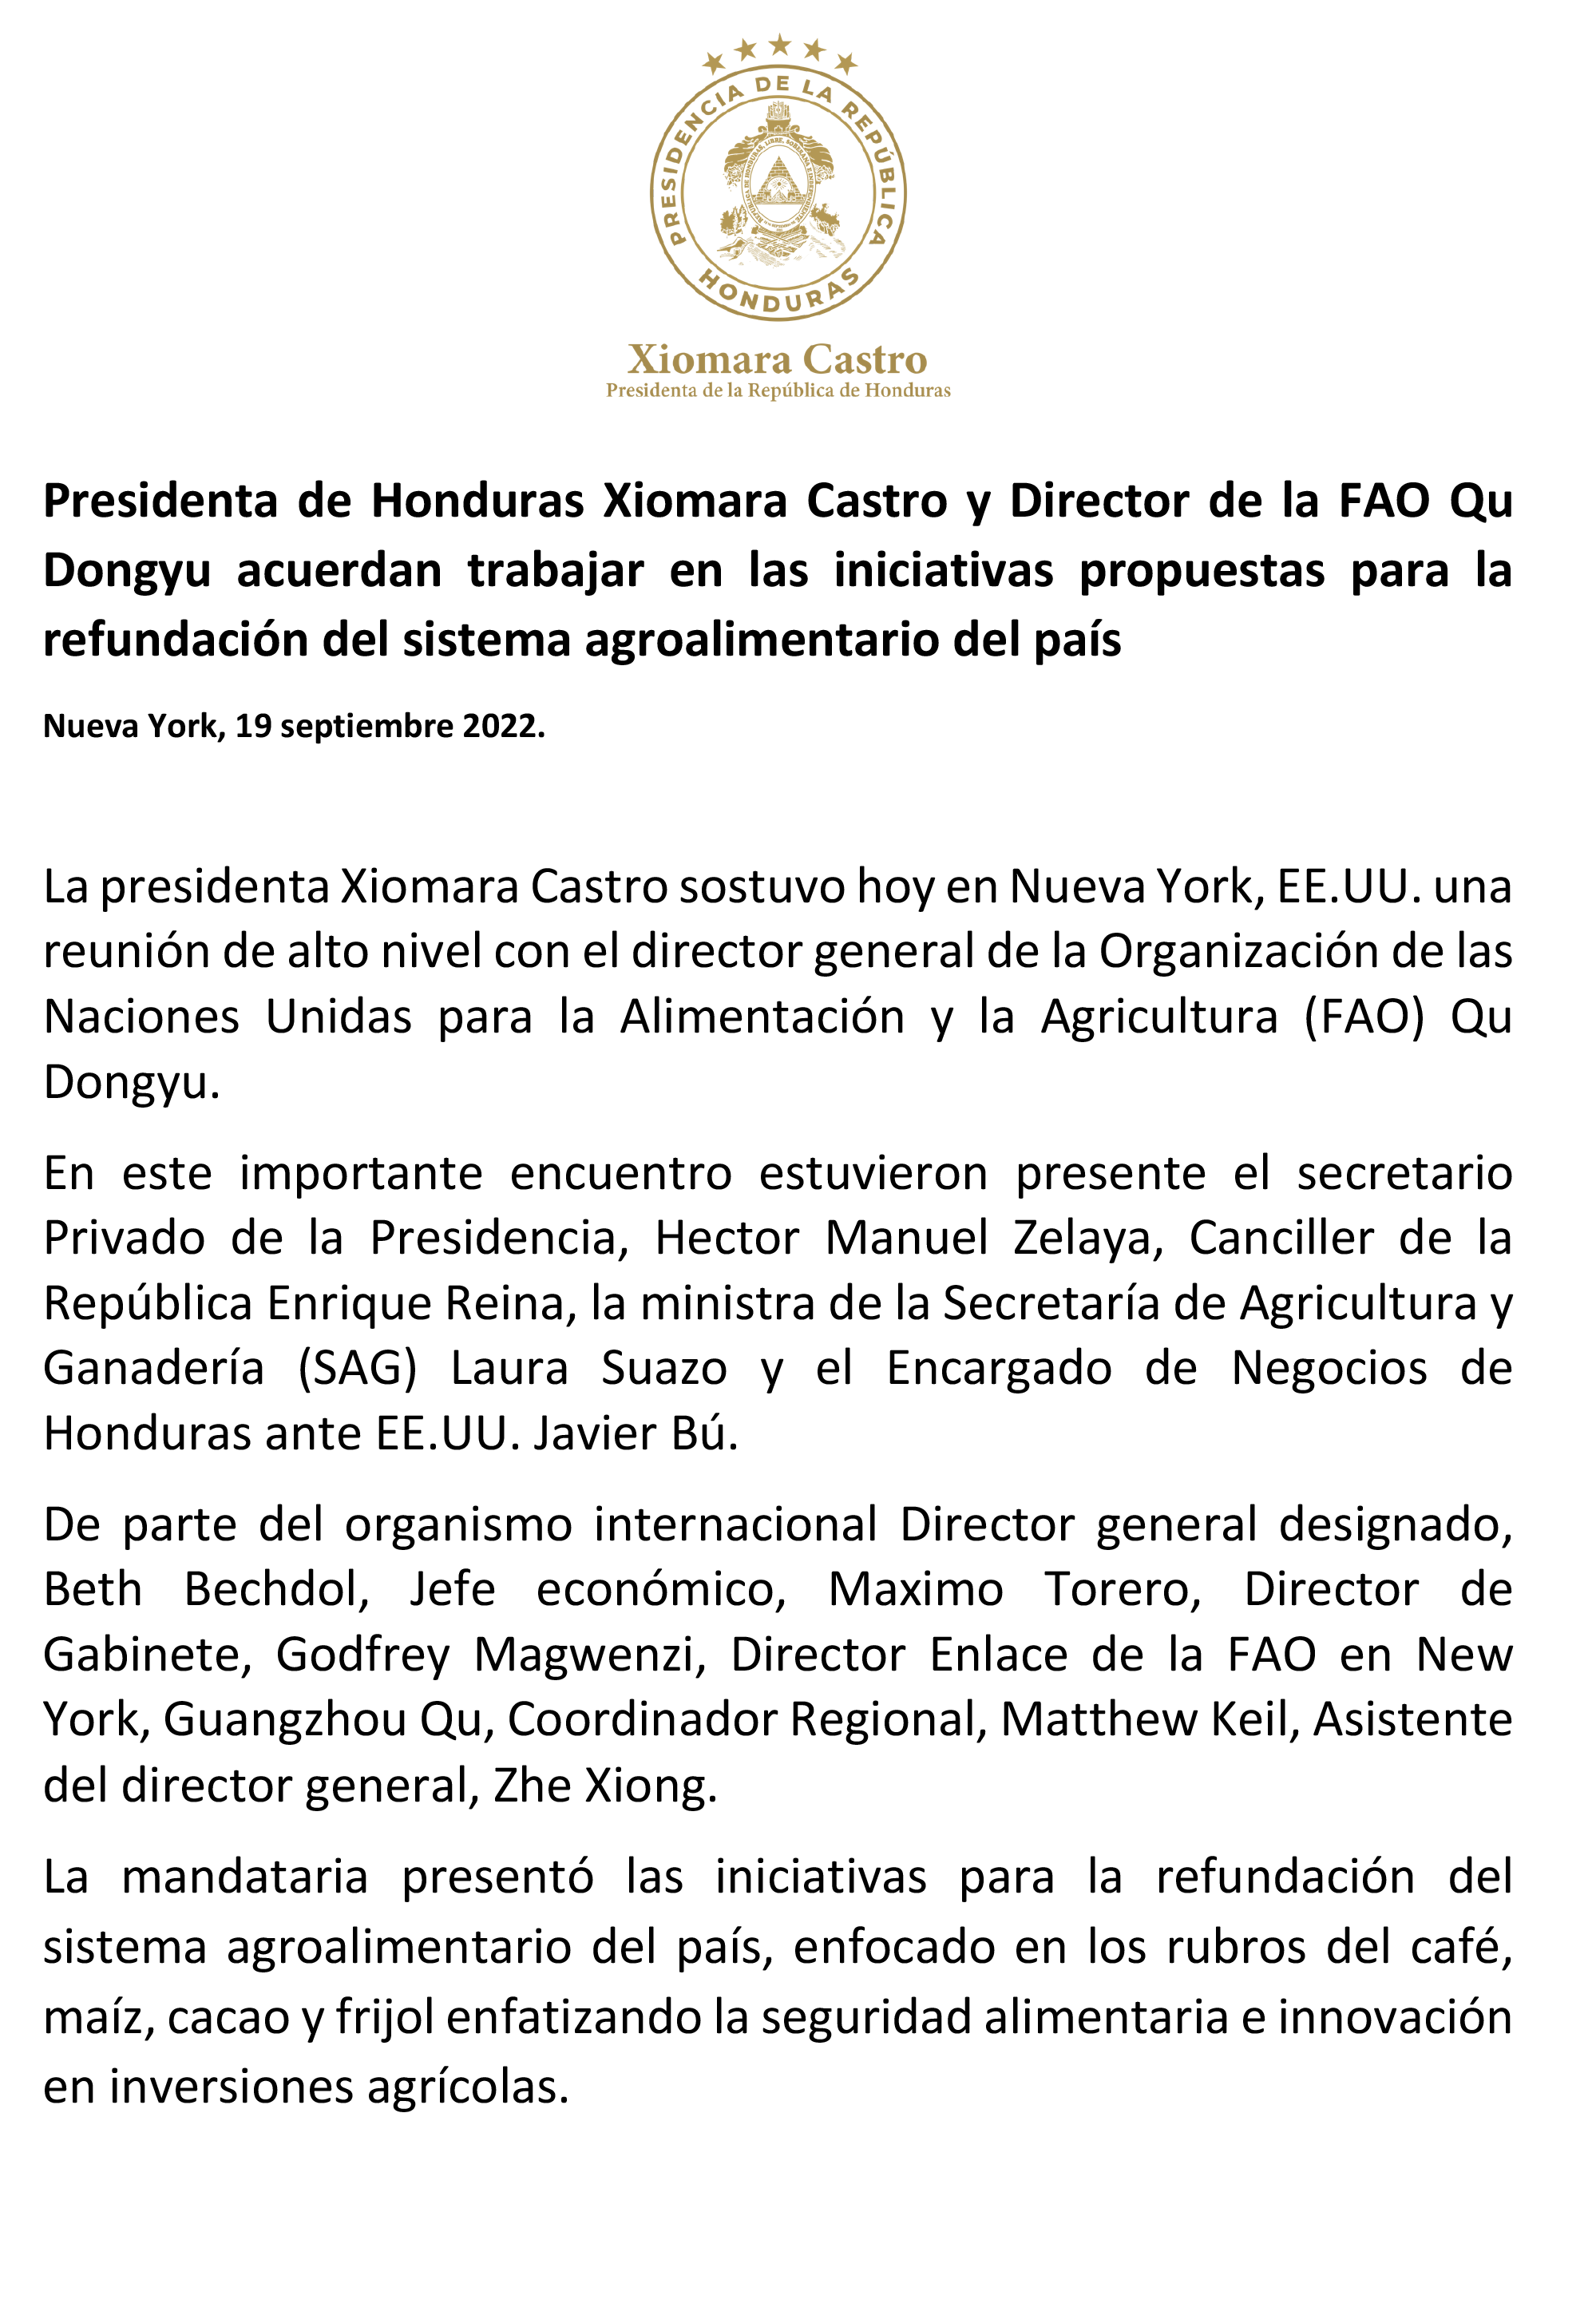 Presidenta Xiomara Castro reitera su compromiso a seguir solicitando la redesignación de un TPS para hondureños en EE.UU.